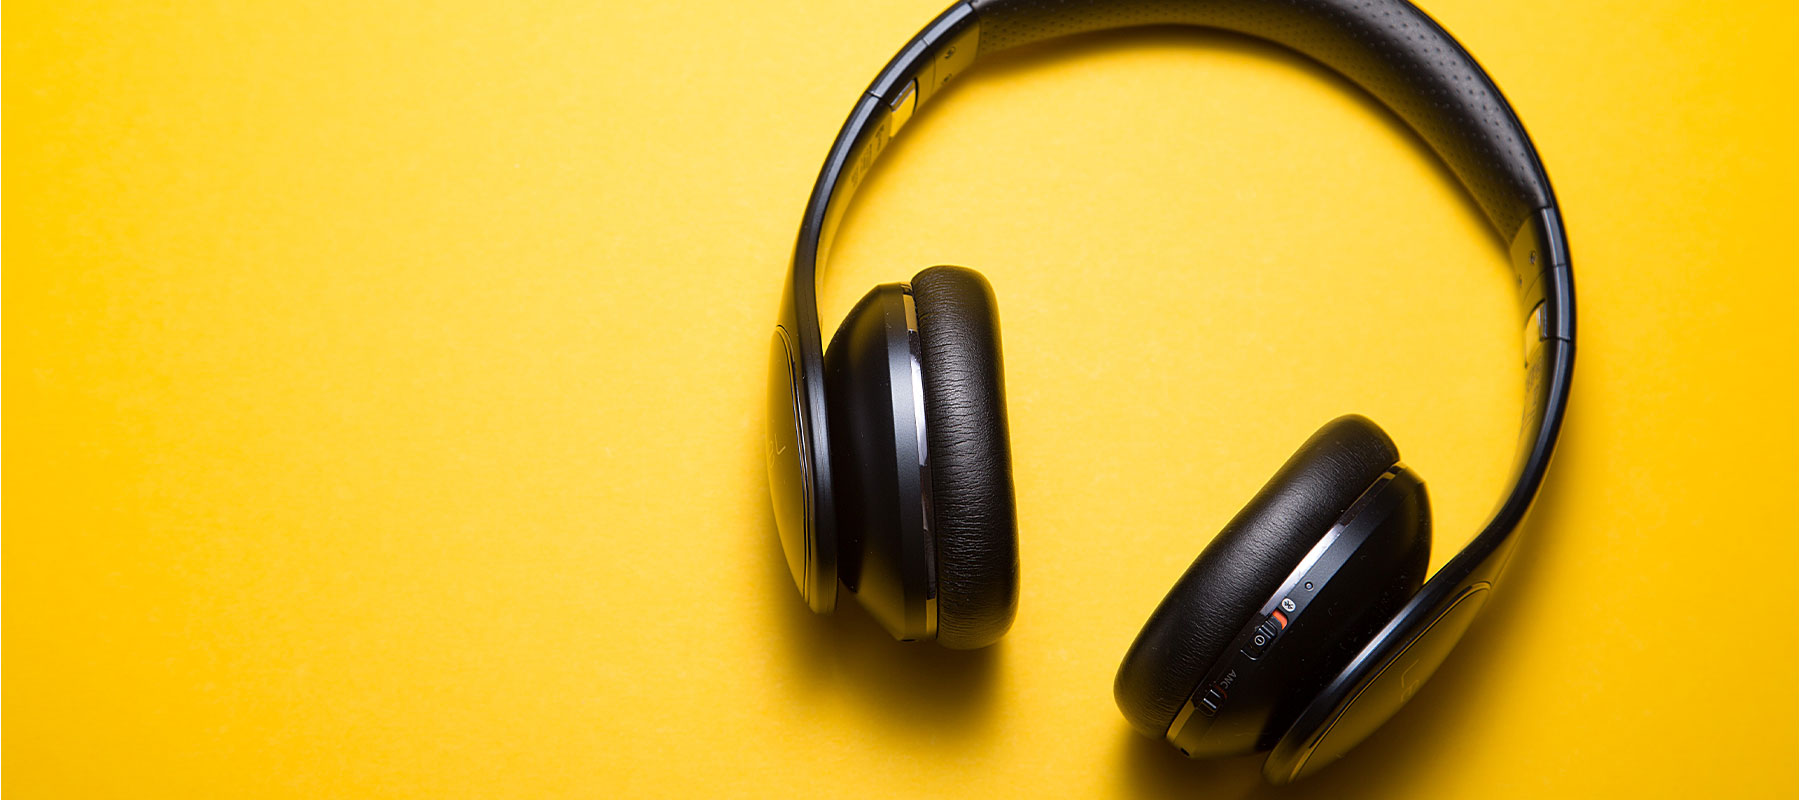 Black Headphones on yellow background